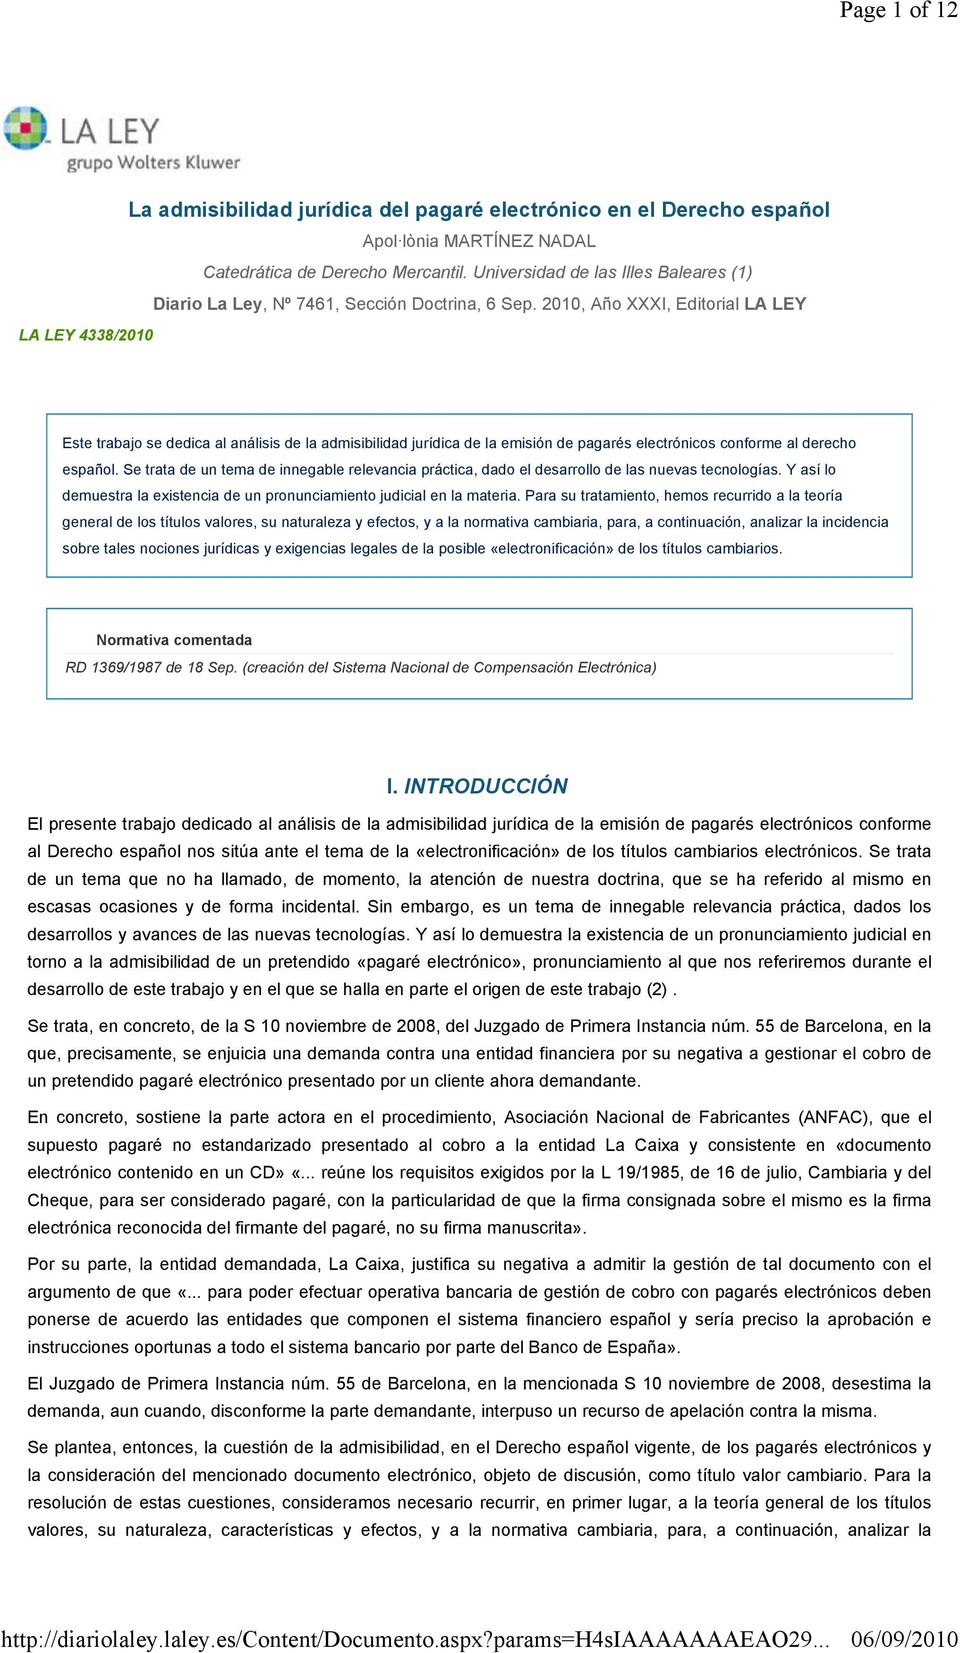 2010, Año XXXI, Editorial LA LEY Este trabajo se dedica al análisis de la admisibilidad jurídica de la emisión de pagarés electrónicos conforme al derecho español.